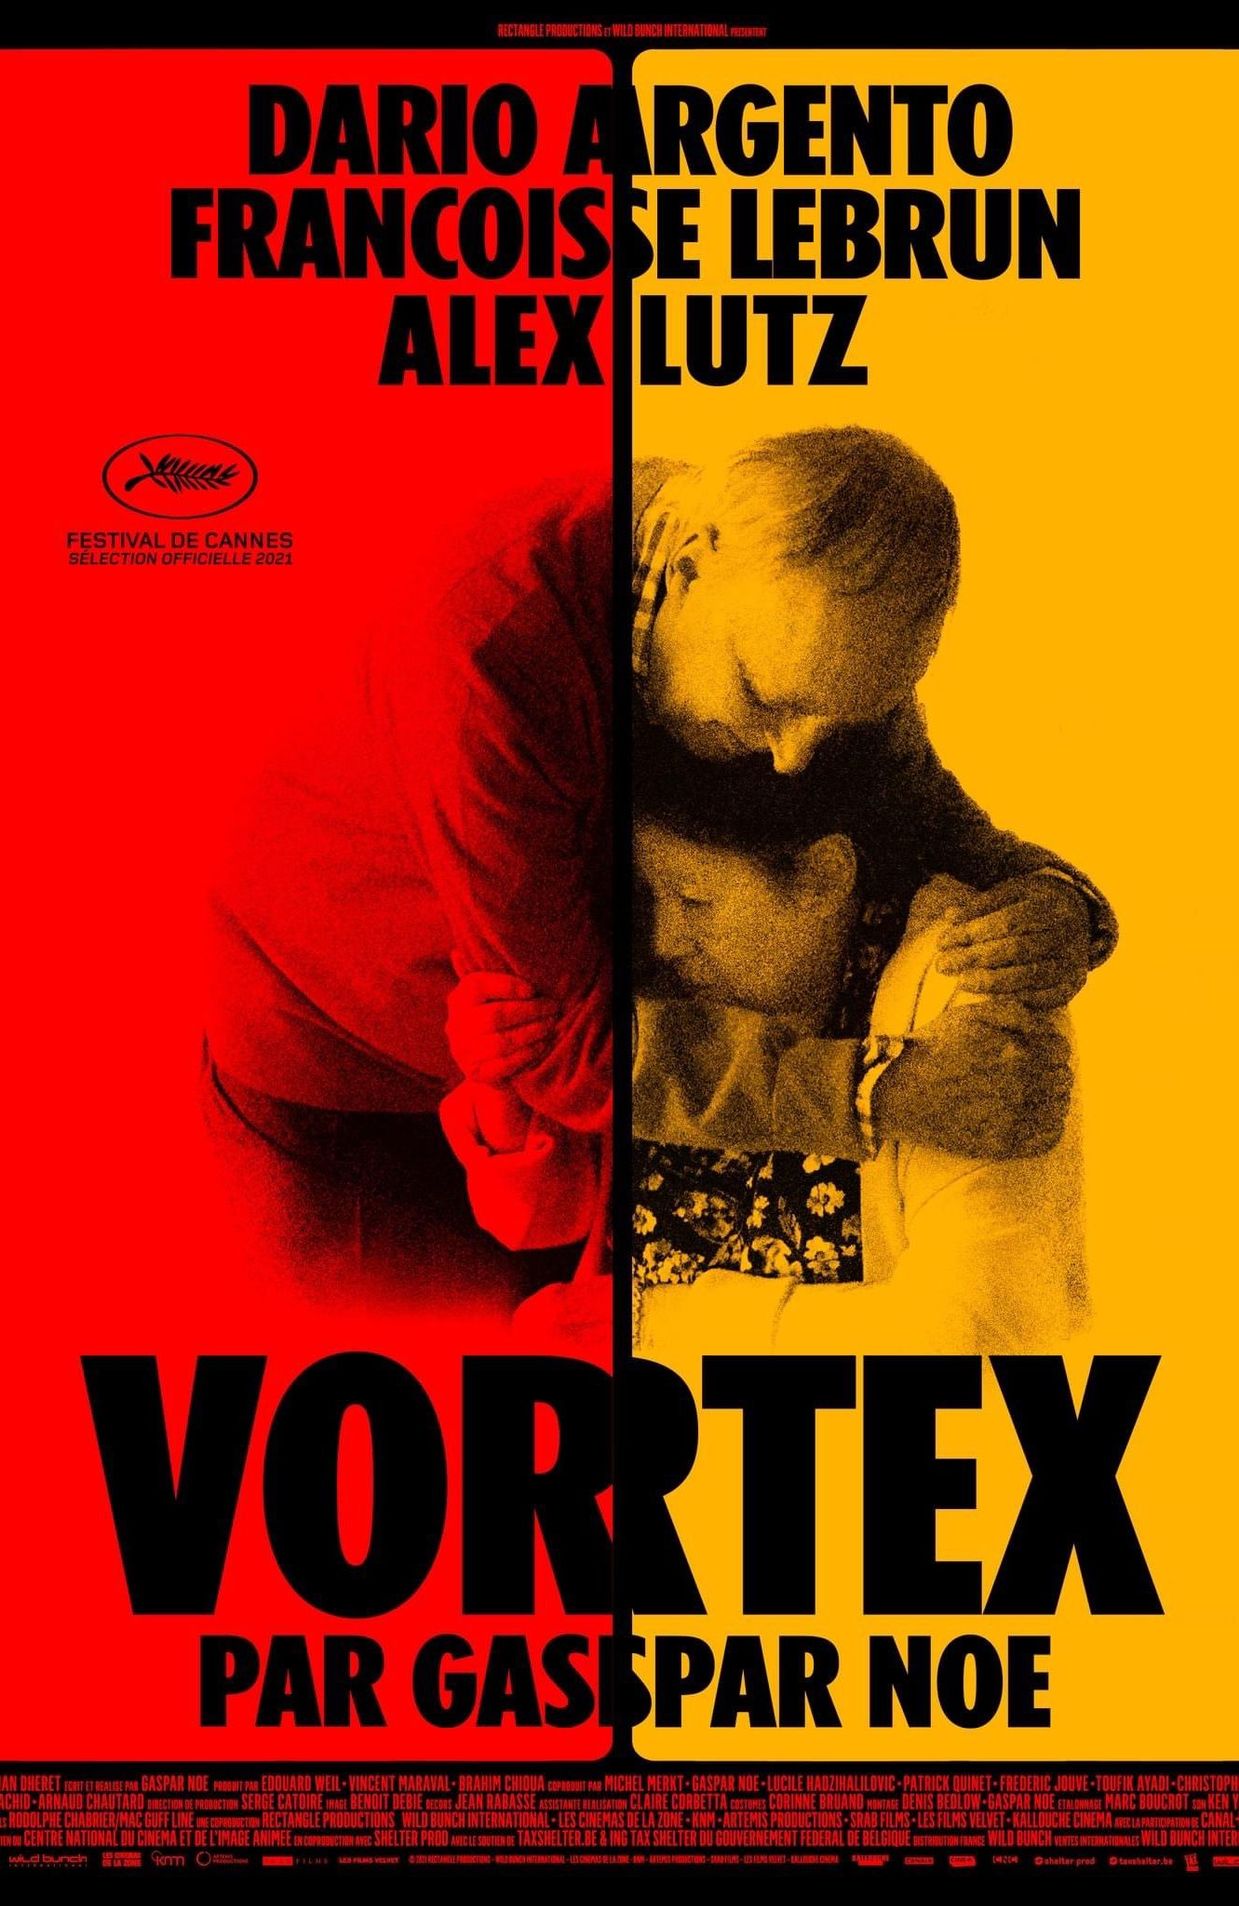 L'affiche de "Vortex" de Gaspar Noé